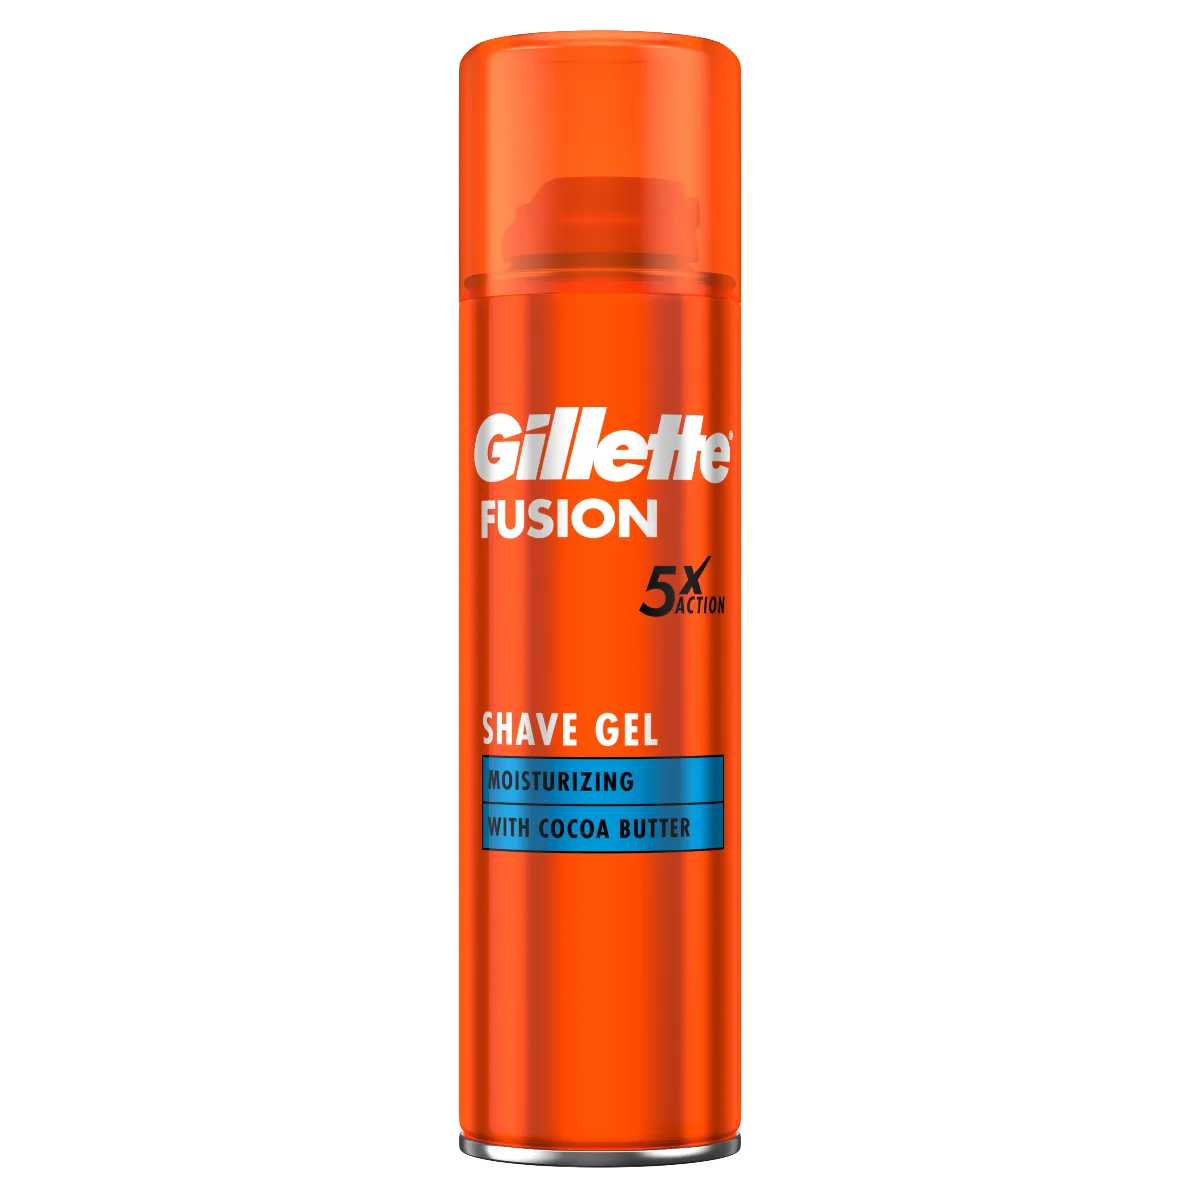 Gillette Fusion 5 Ultra Moisturizing nawilżający żel do golenia, 200 ml